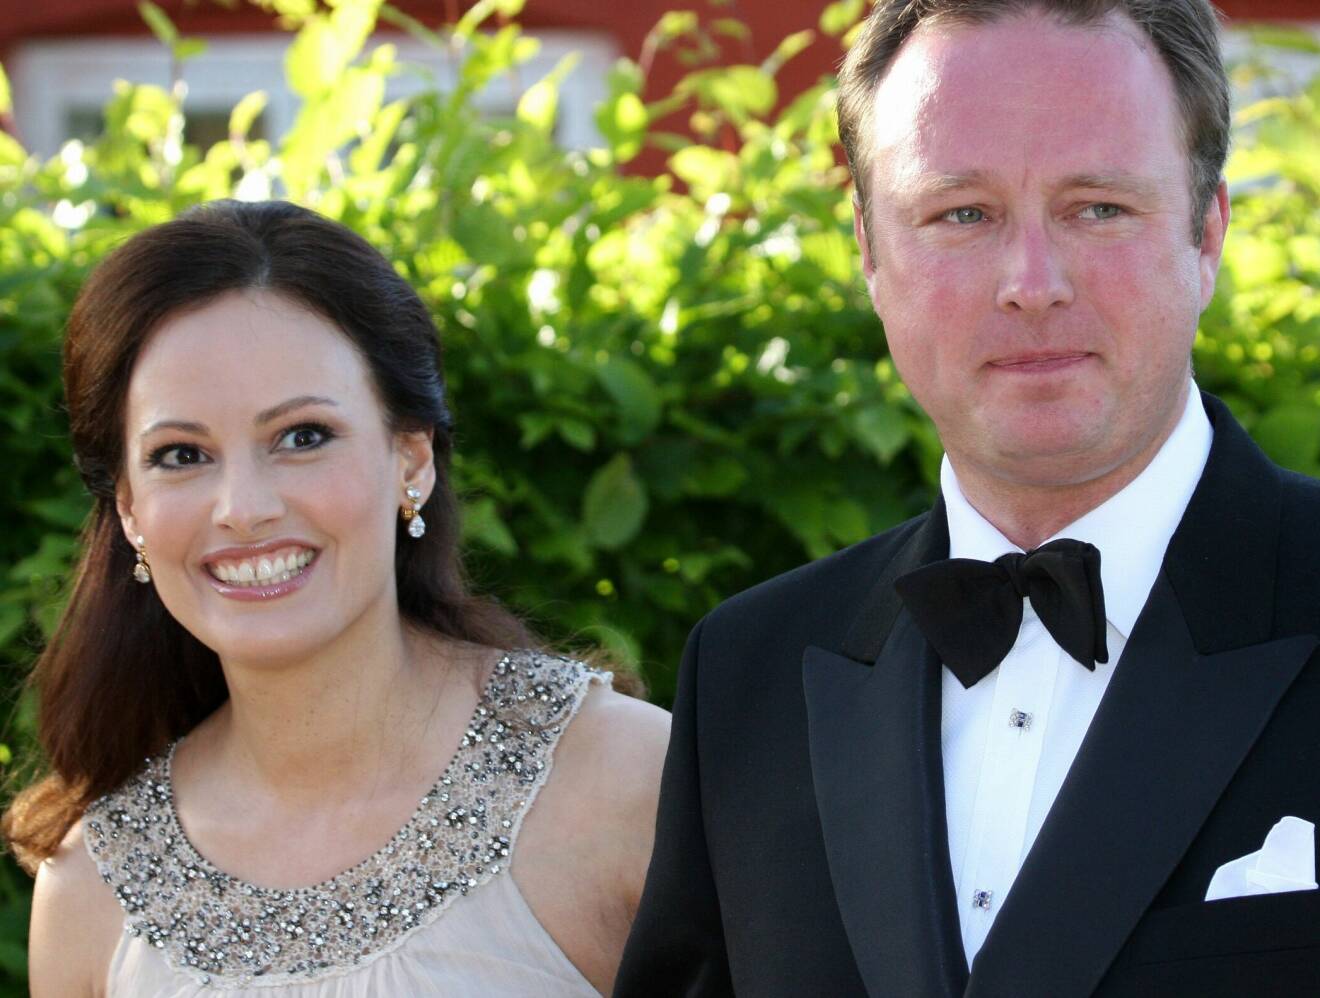 Prins Gustav gifter sig med Carina Axelsson som nu blir prinsessa